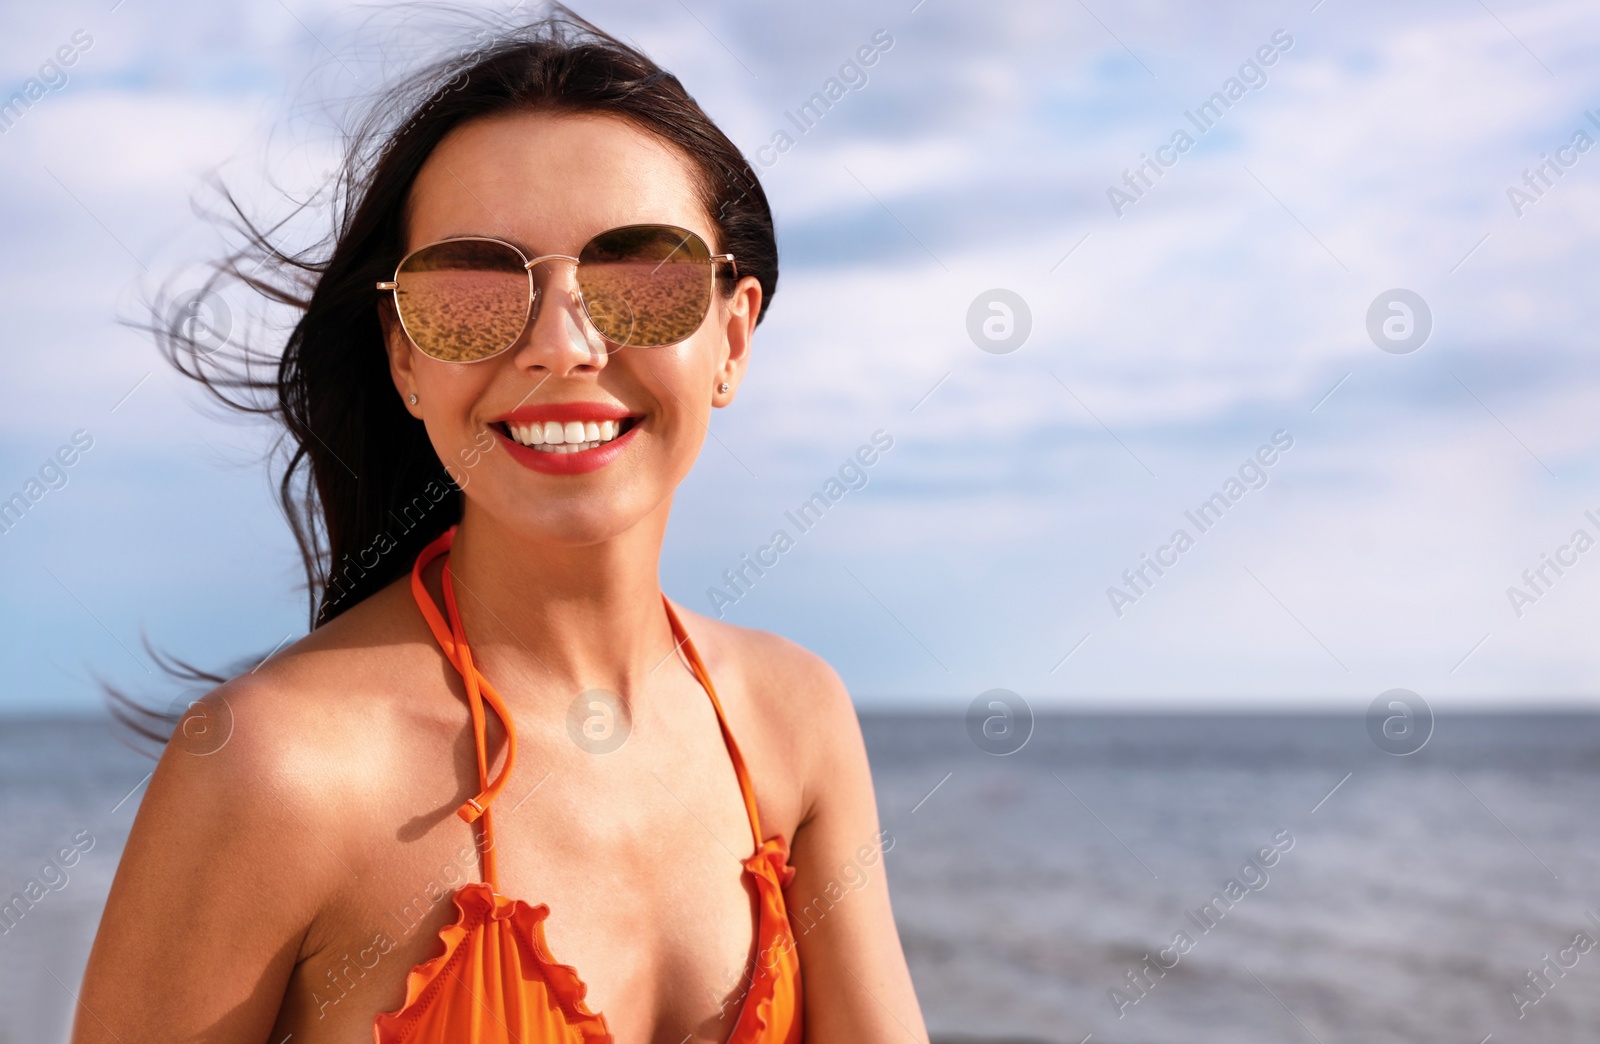 Photo of Beautiful young woman in bikini on beach